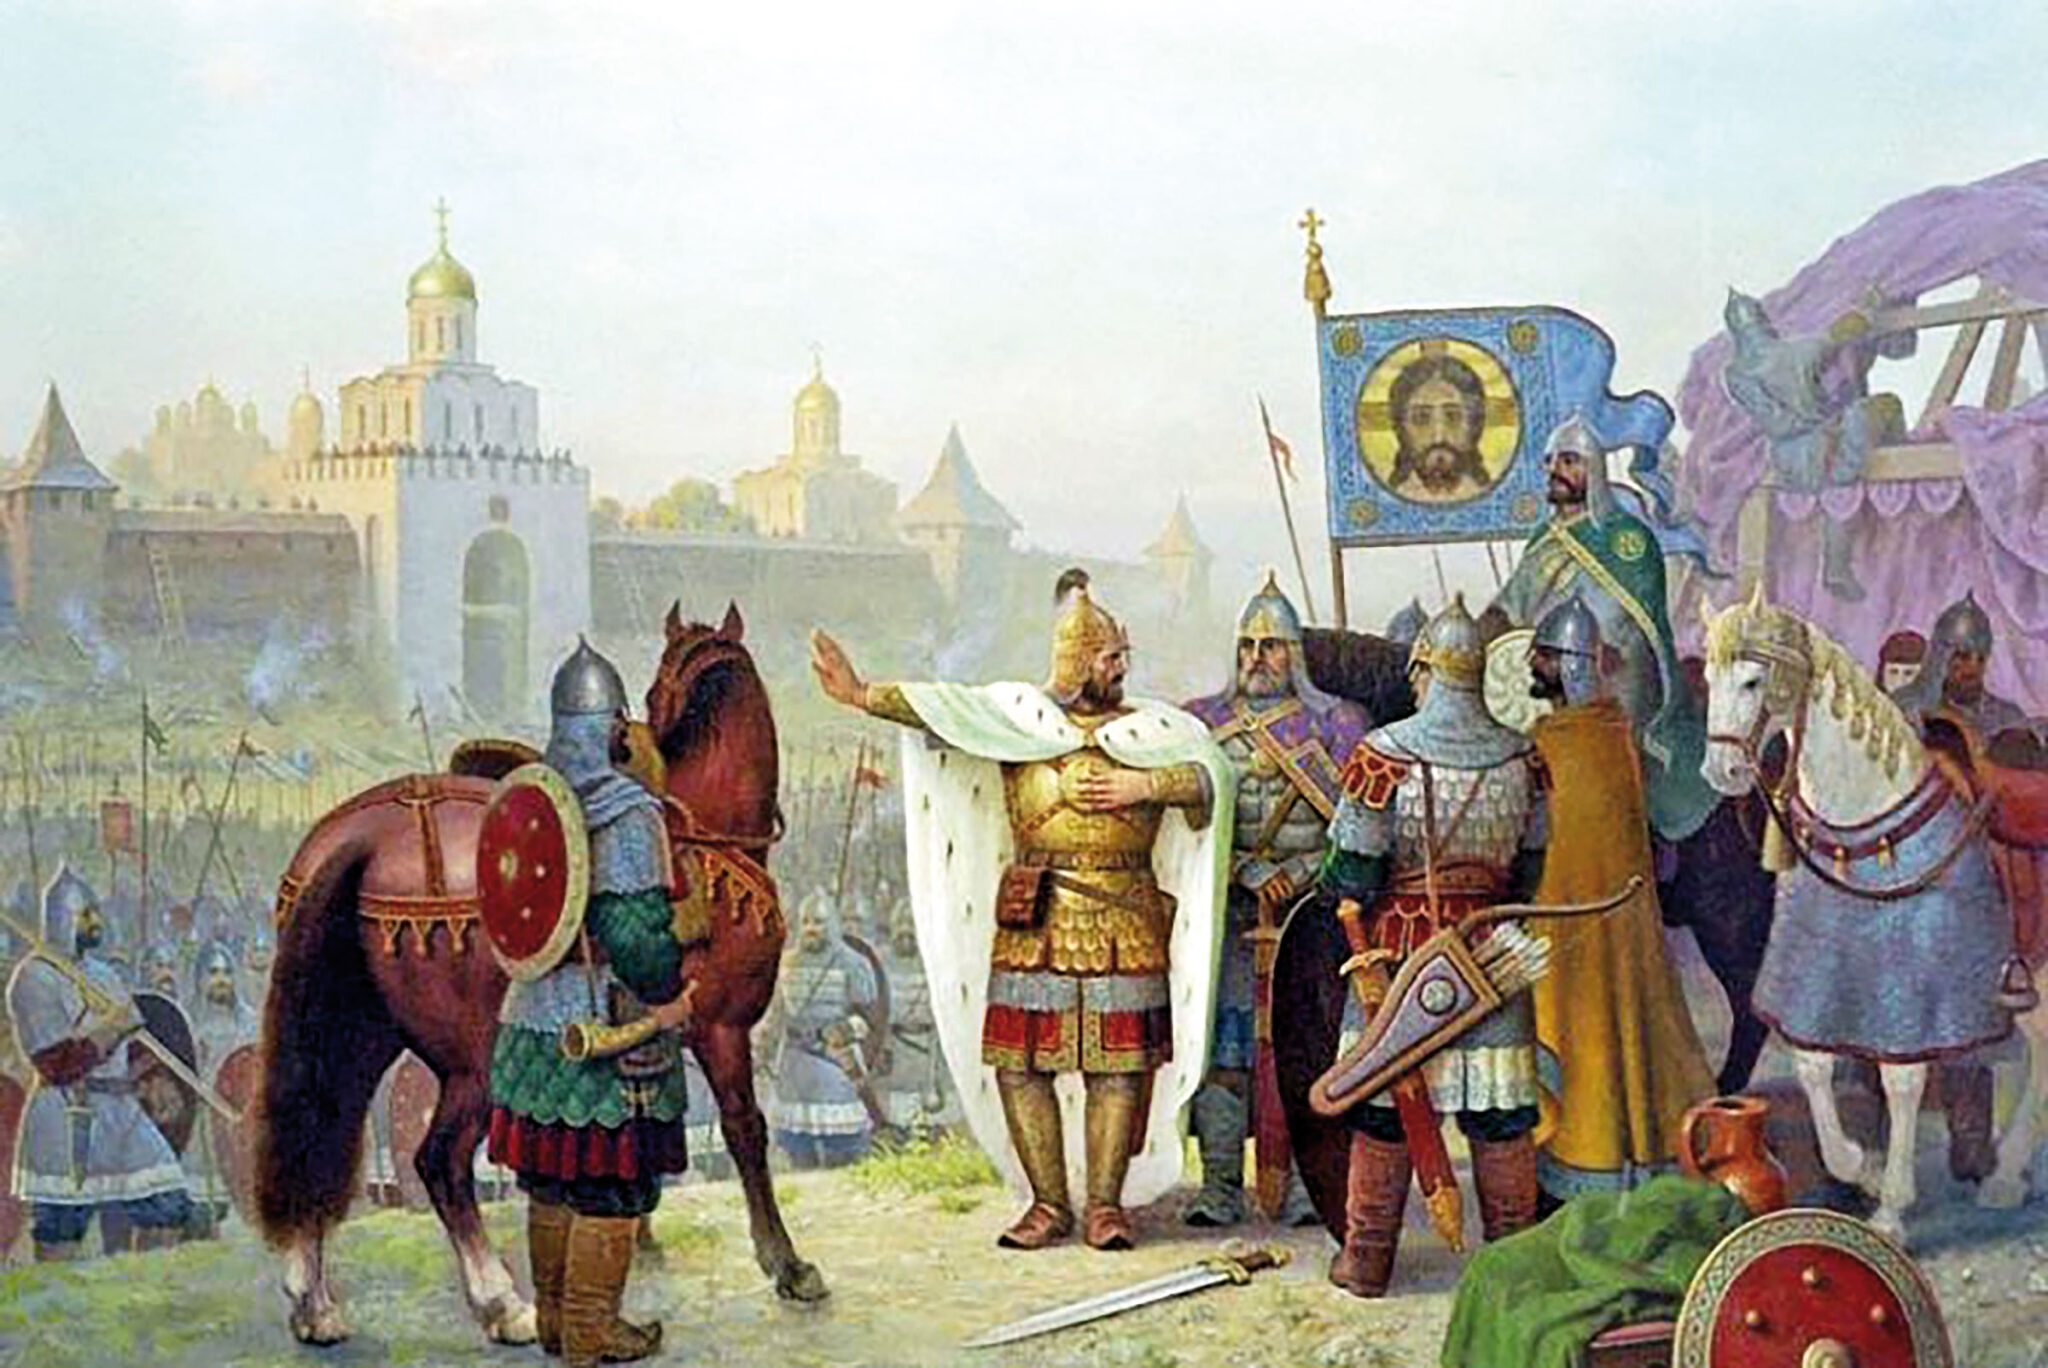 Борьба за киевский престол в 12 веке